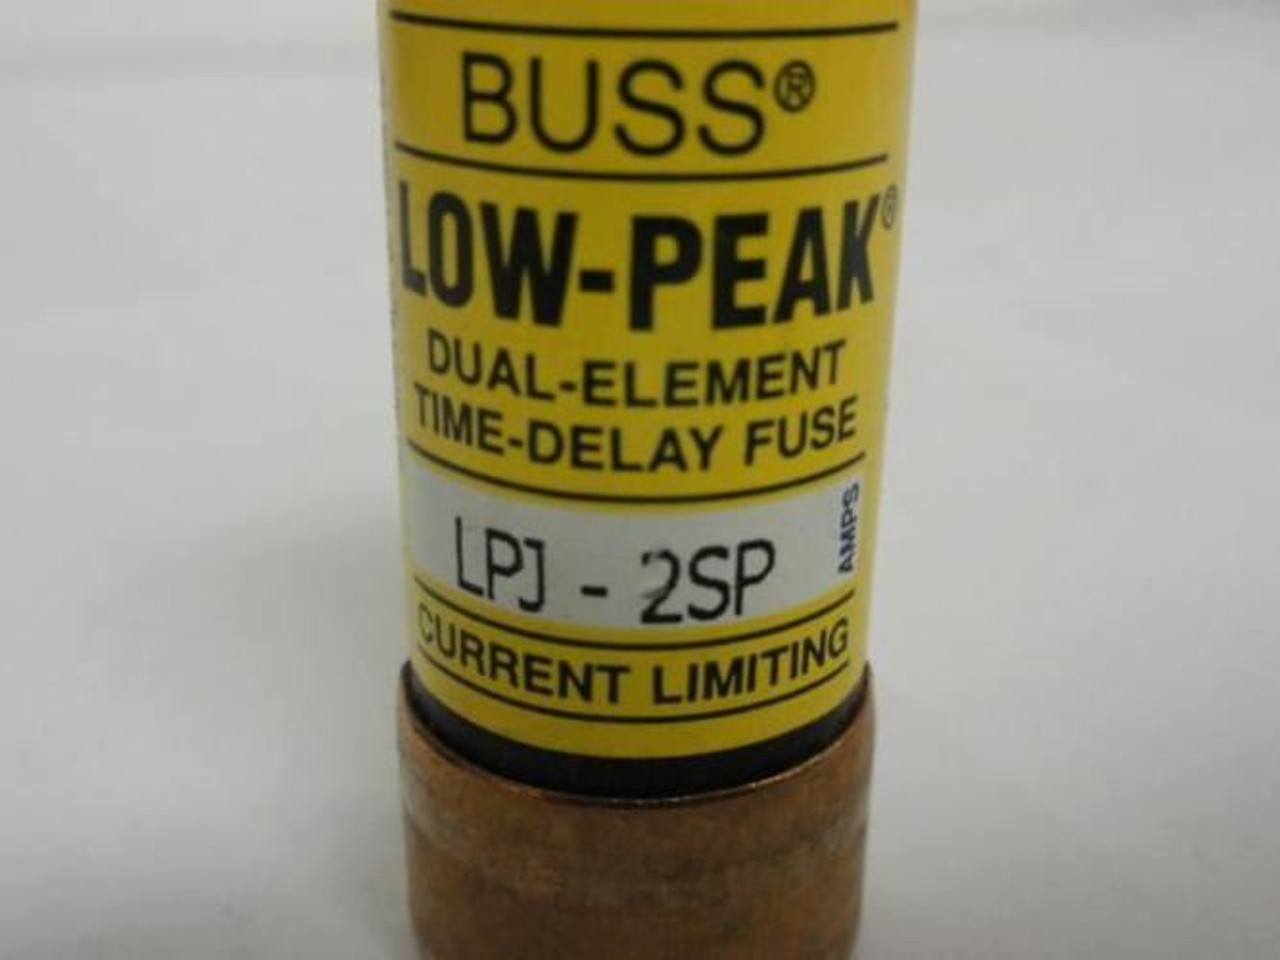 Bussmann LPJ-2SP; Fuse; Low-Peak; 2Amp; Current Limiting